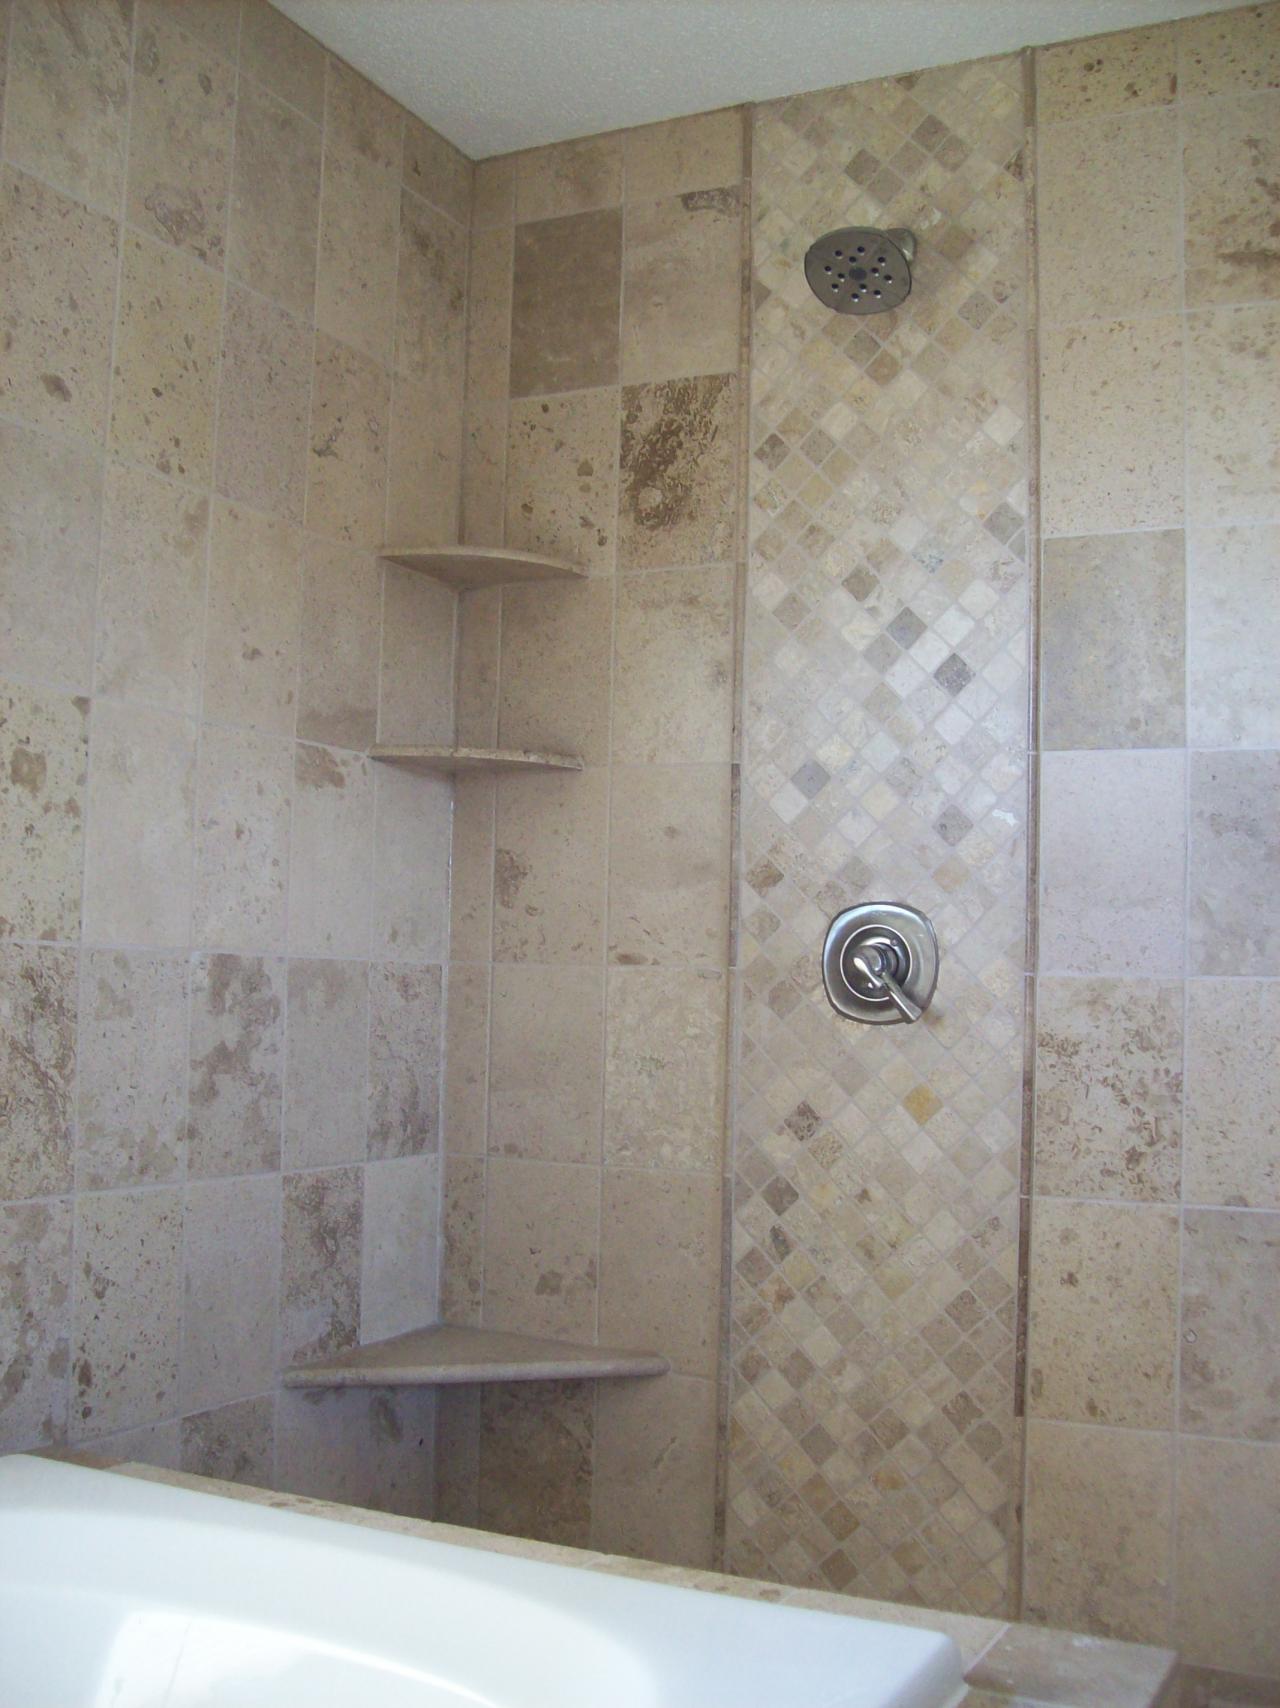 Tiles Bathroom Tiled Wallpaper For Bathrooms White Tile Ideas